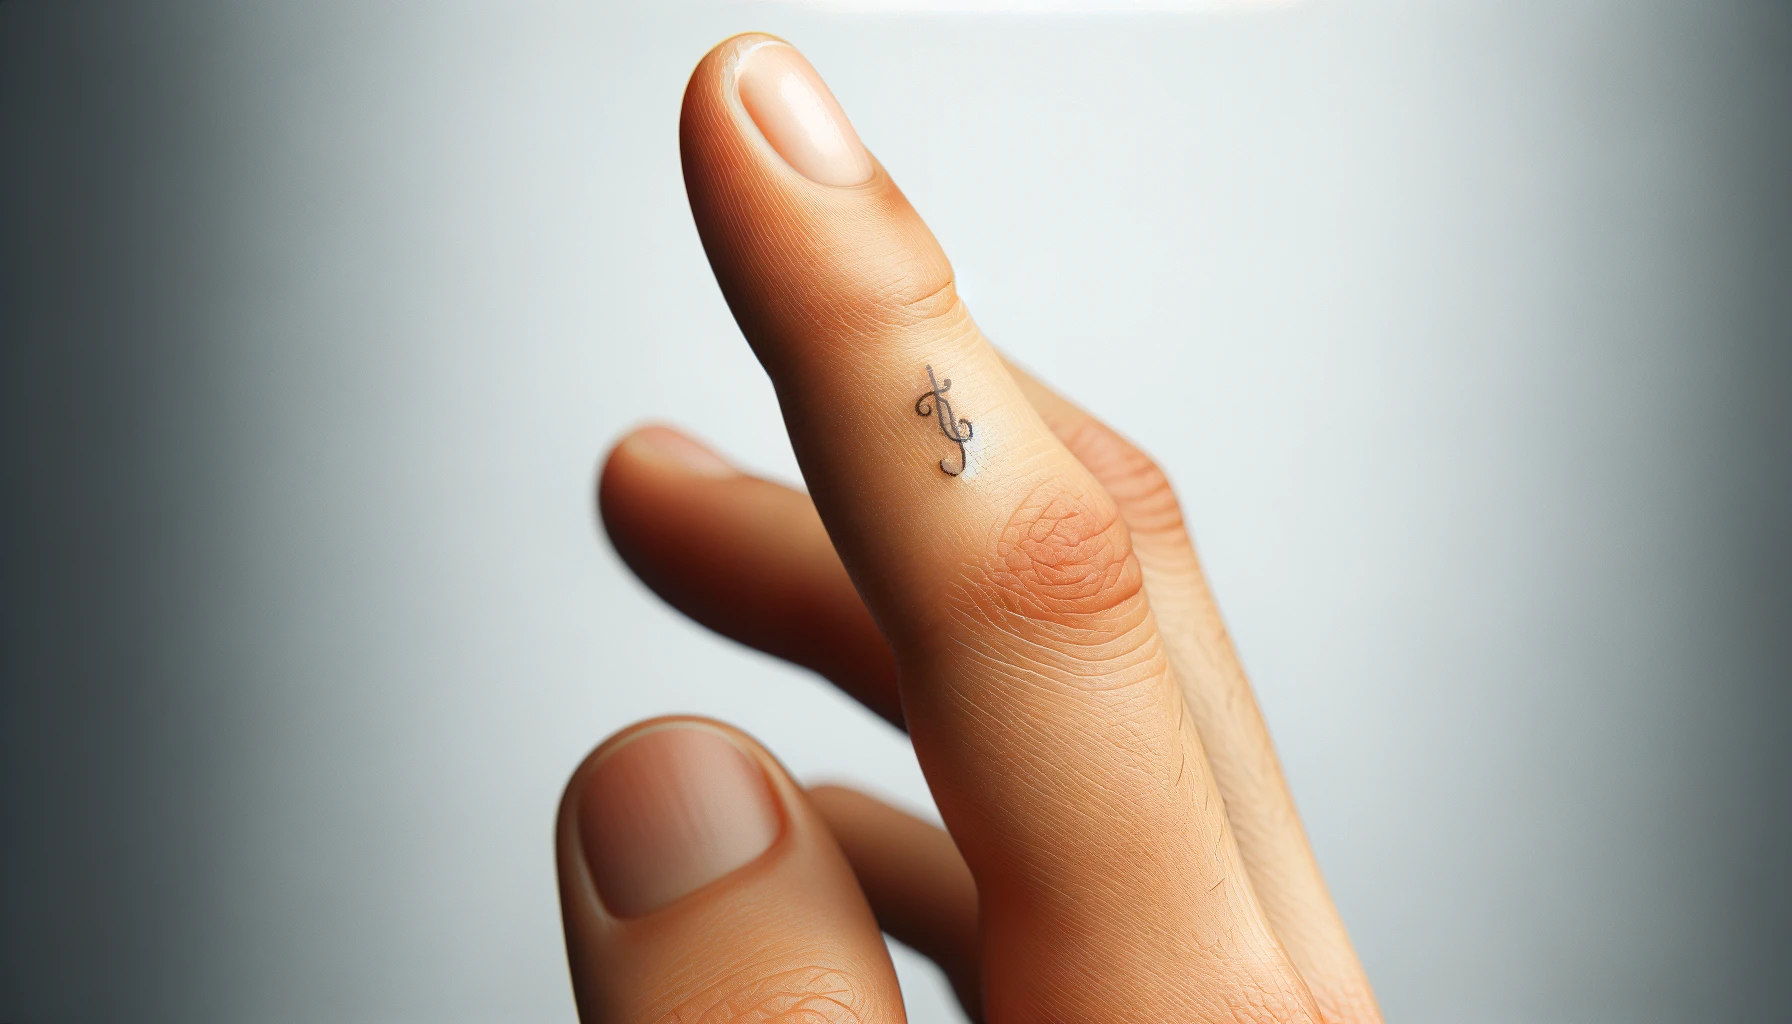 Na palcu widać delikatny tatuaż w kształcie klucza wiolinowego, który jest drobnym, ale wyrazistym akcentem. Jest to jedyny widoczny tatuaż na skórze